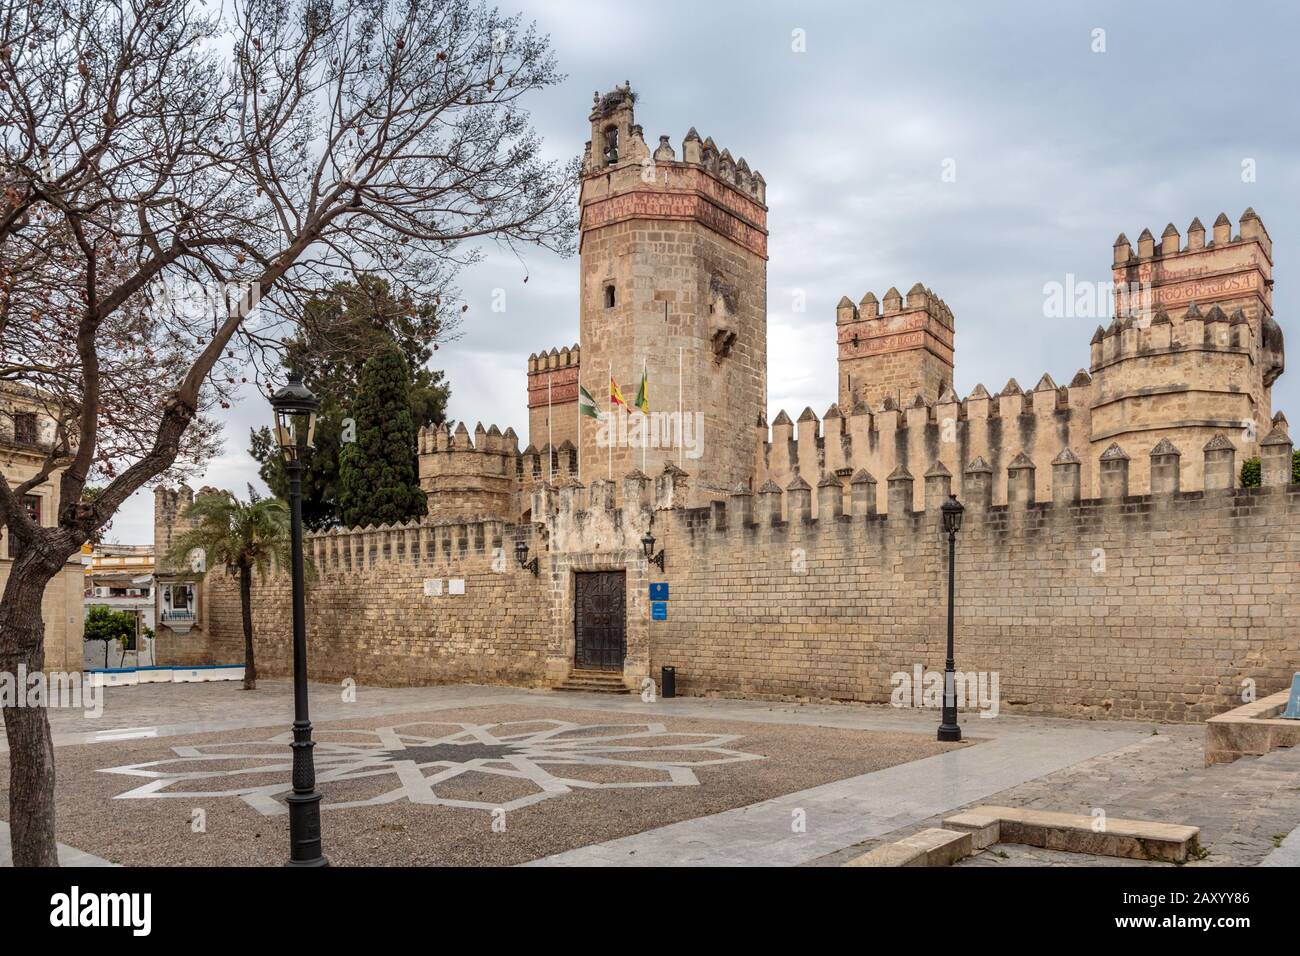 Castle of San Marcos is a medieval Islamic-Gothic structure located in El Puerto de Santa María, Cadiz Province, Spain. Stock Photo